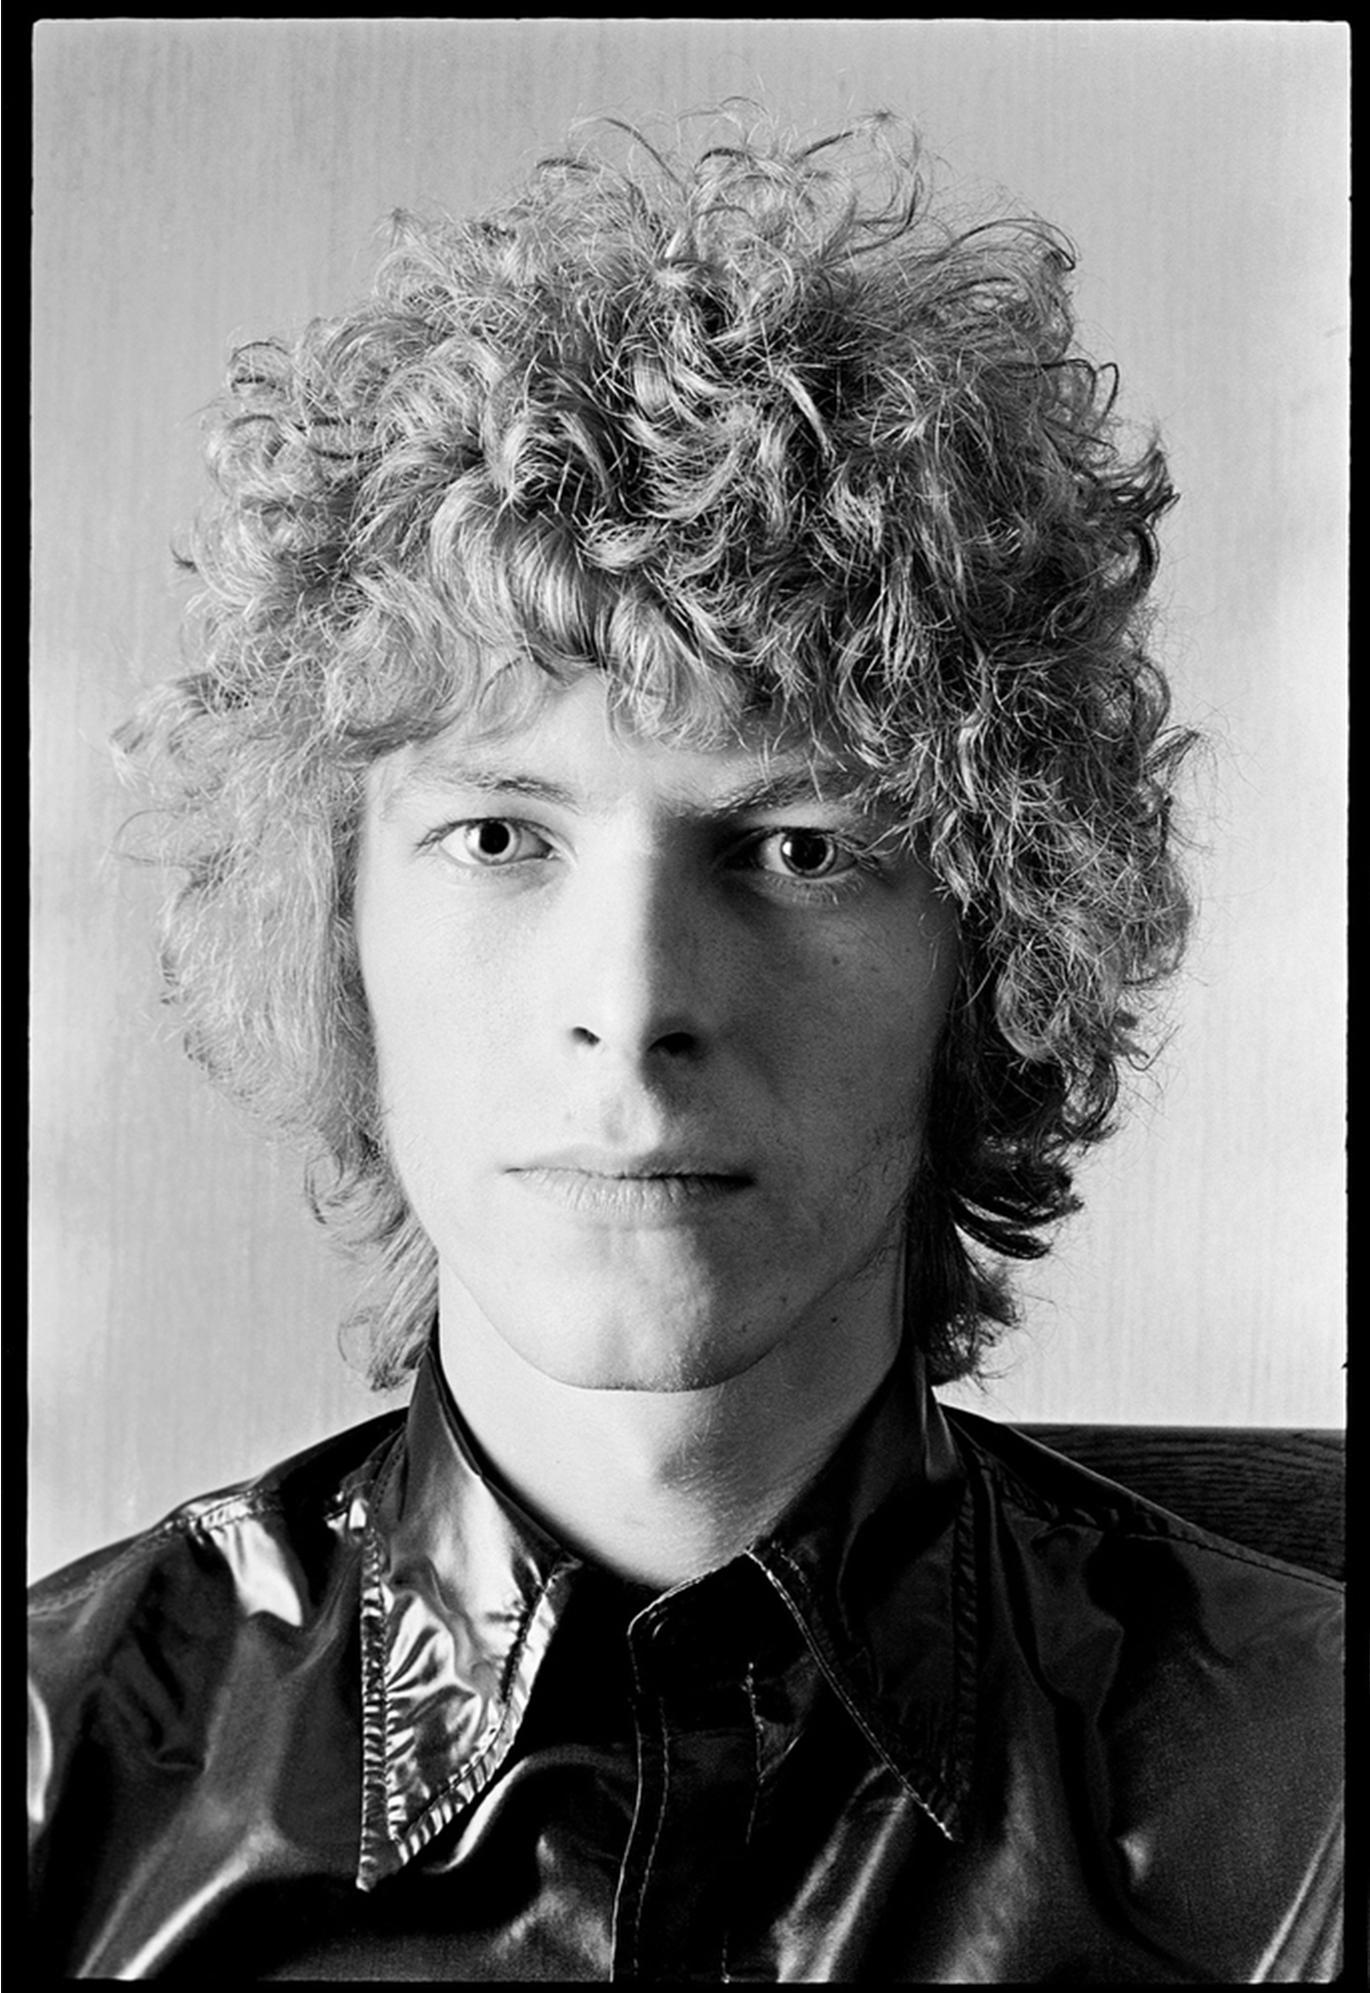 Alec Byrne Portrait Photograph – David Bowie 1969 Porträt